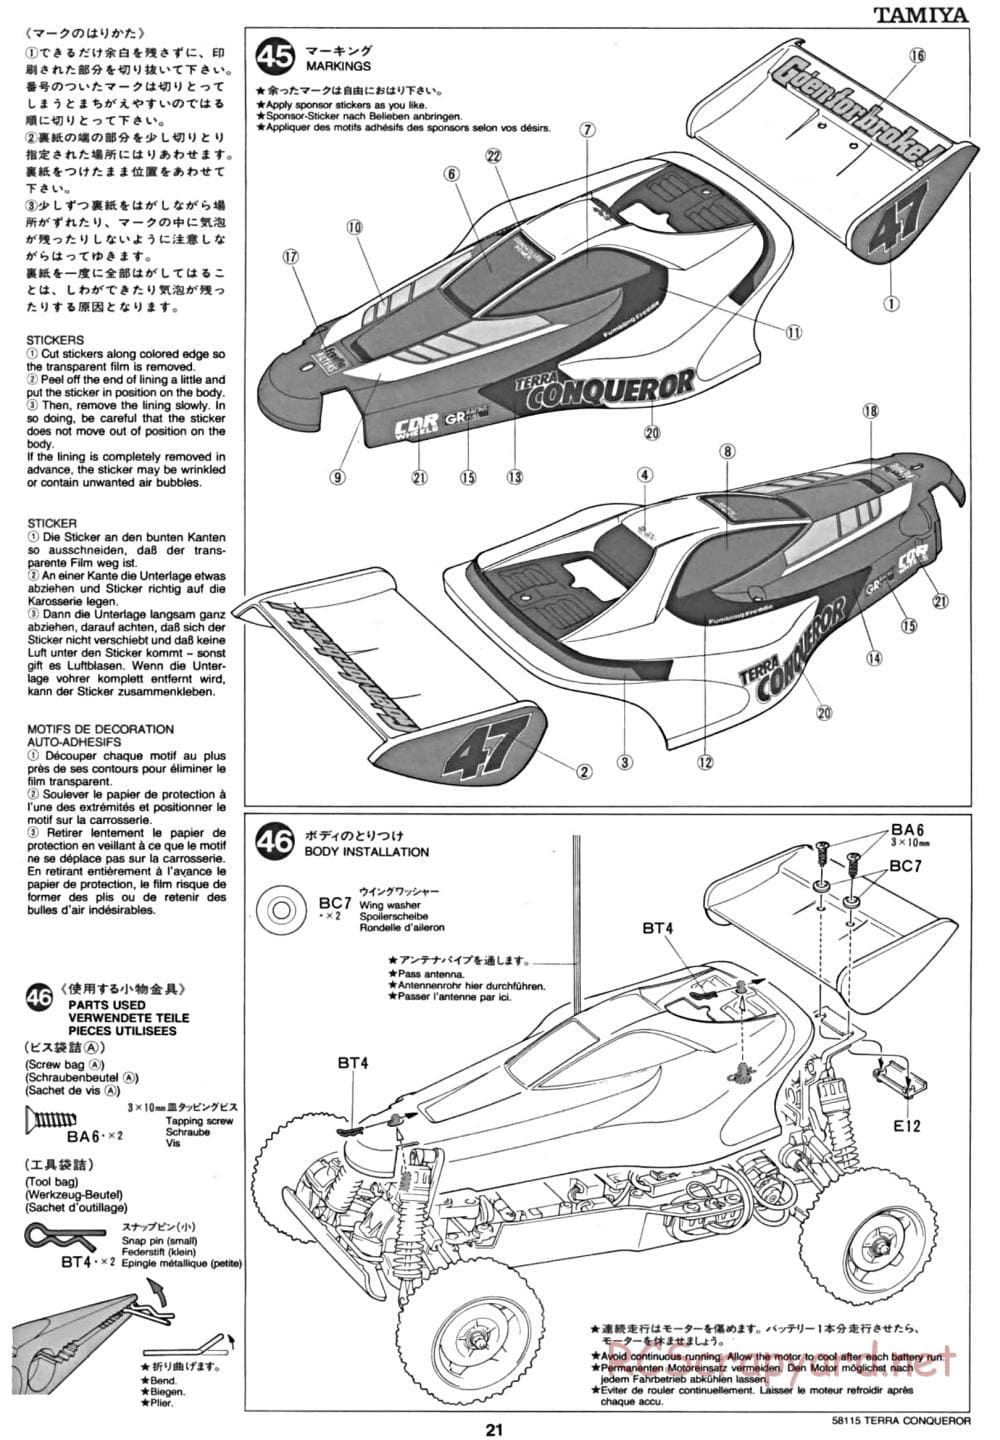 Tamiya - Terra Conqueror Chassis - Manual - Page 21